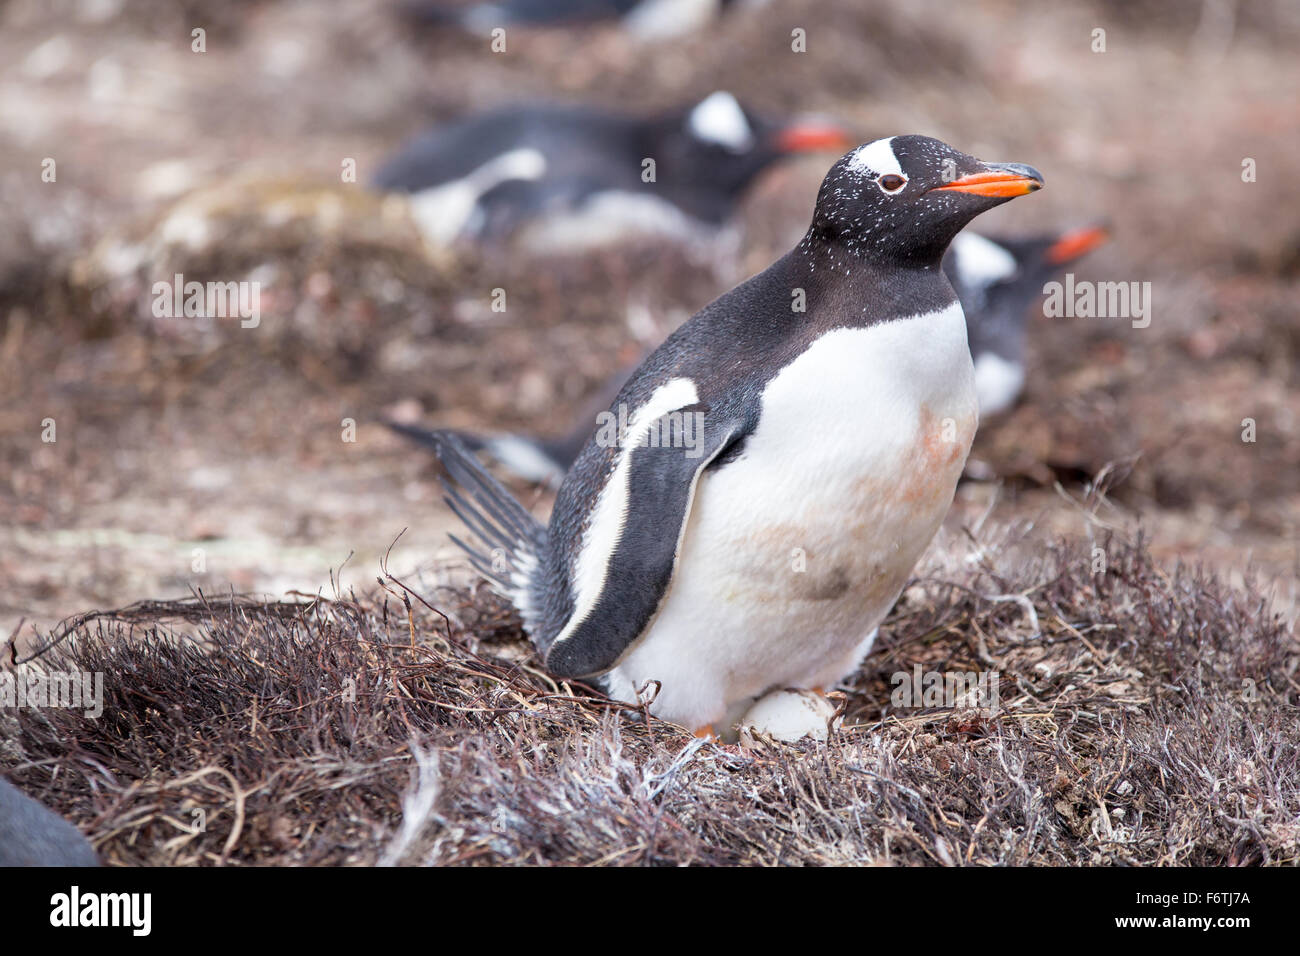 Female Gentoo Penguin on nest with egg. Falkland Islands. Stock Photo